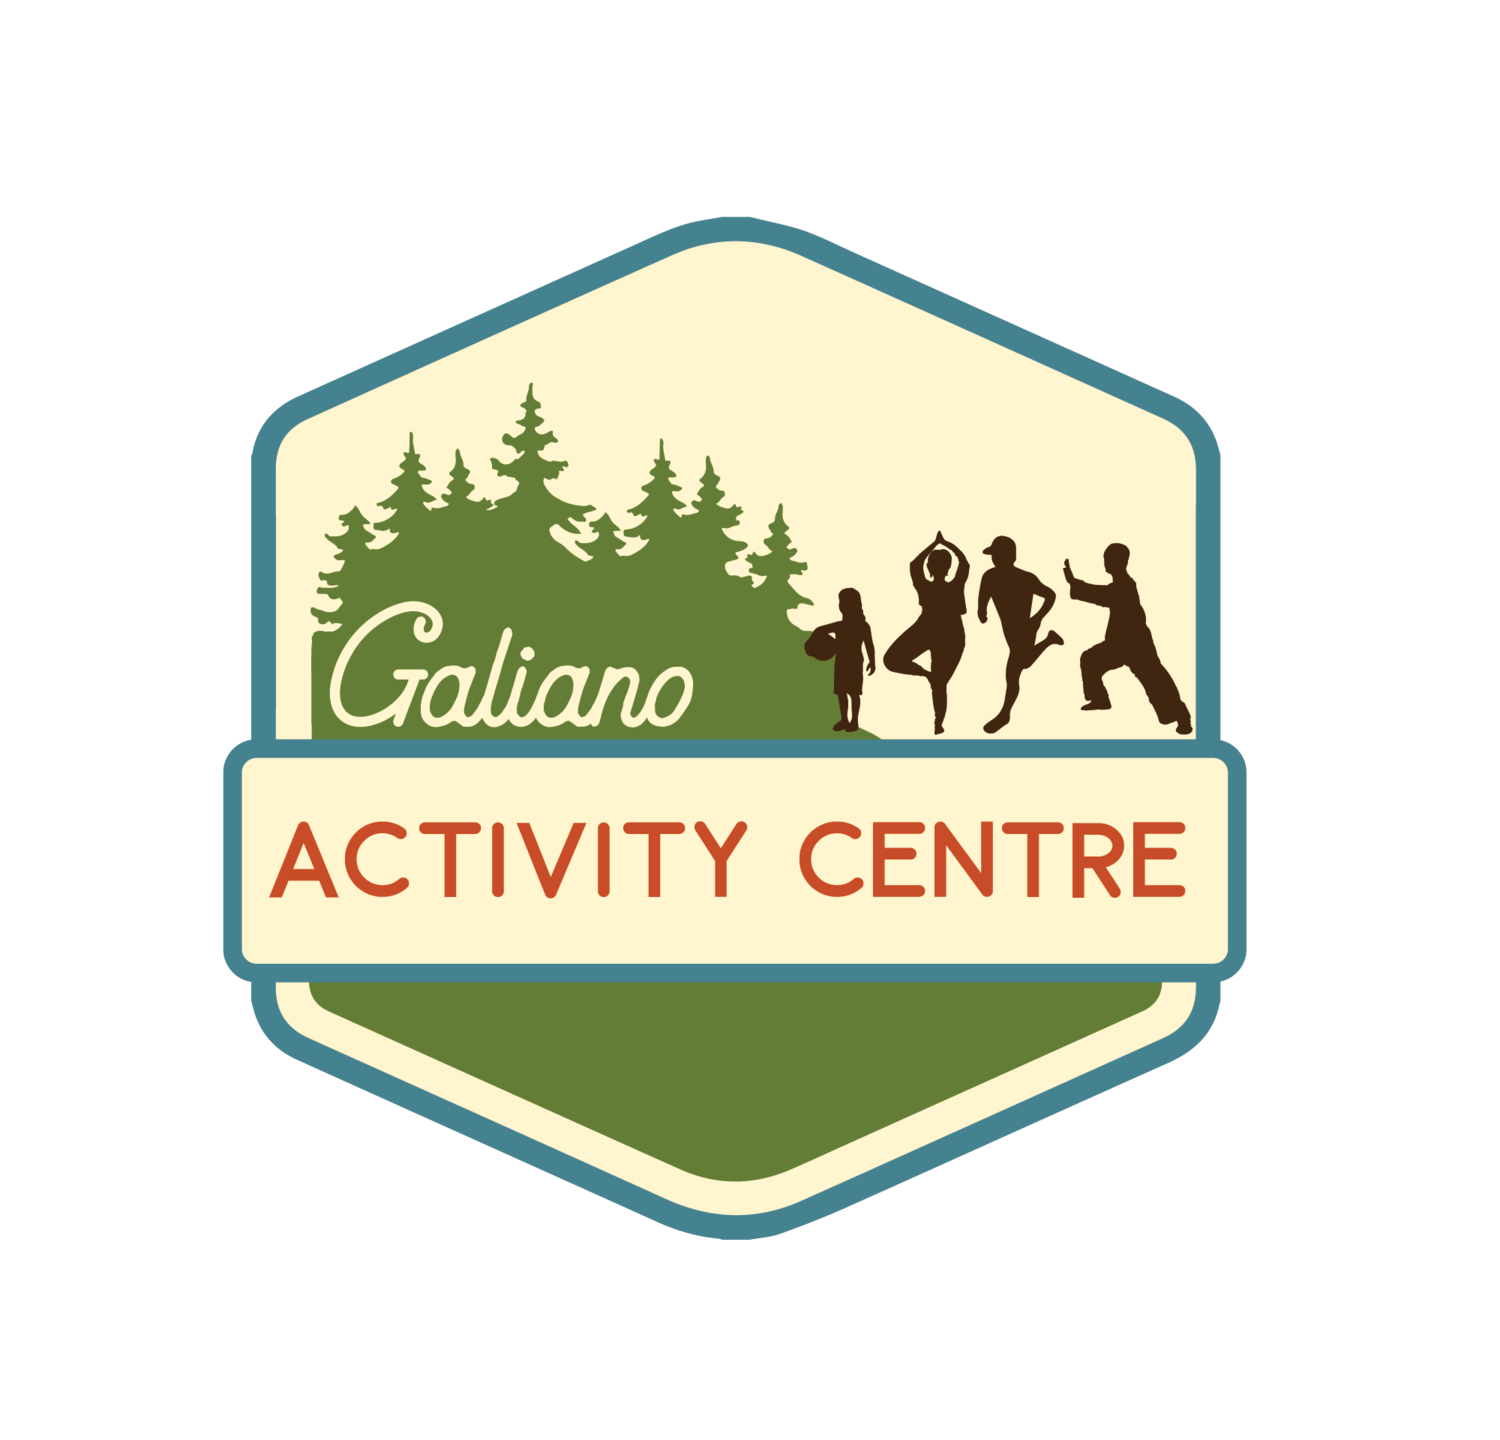 Galiano Activity Centre Society